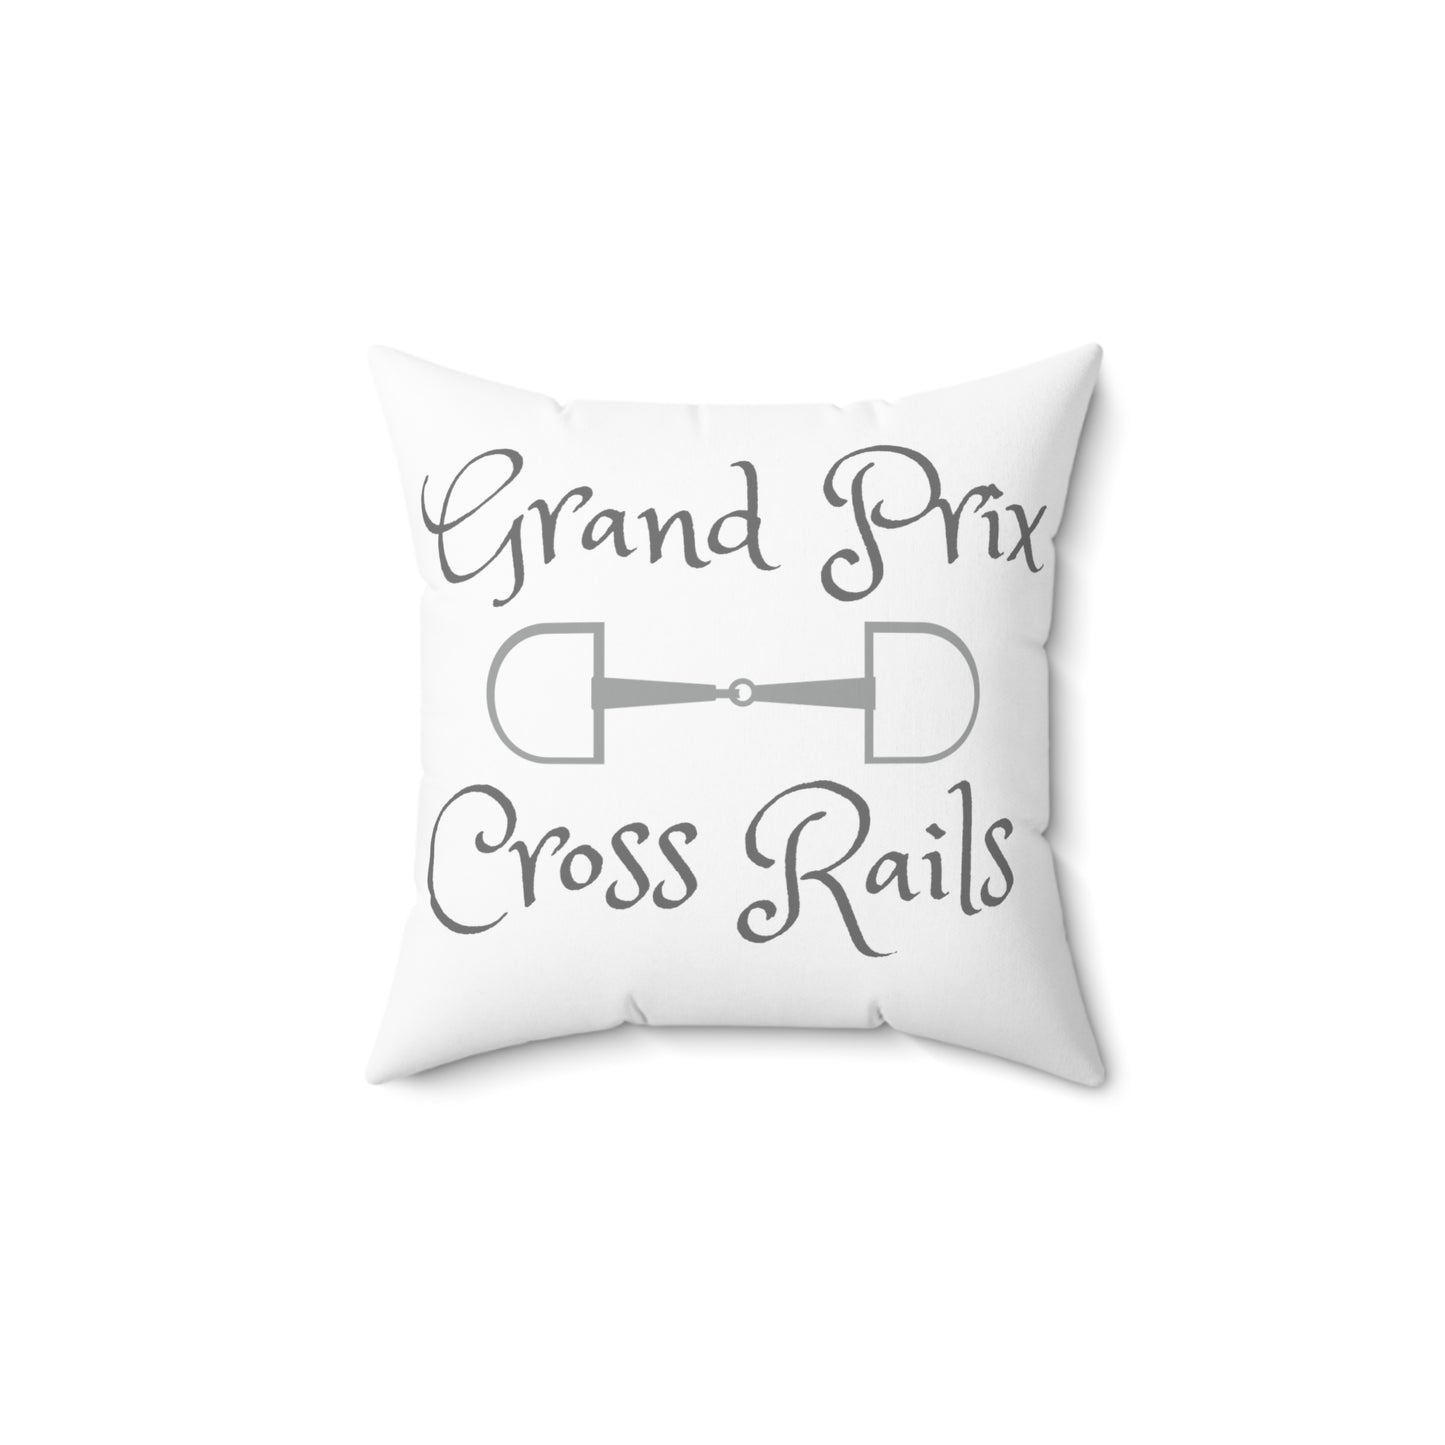 Gran Prix cross rails Spun Polyester Square Pillow